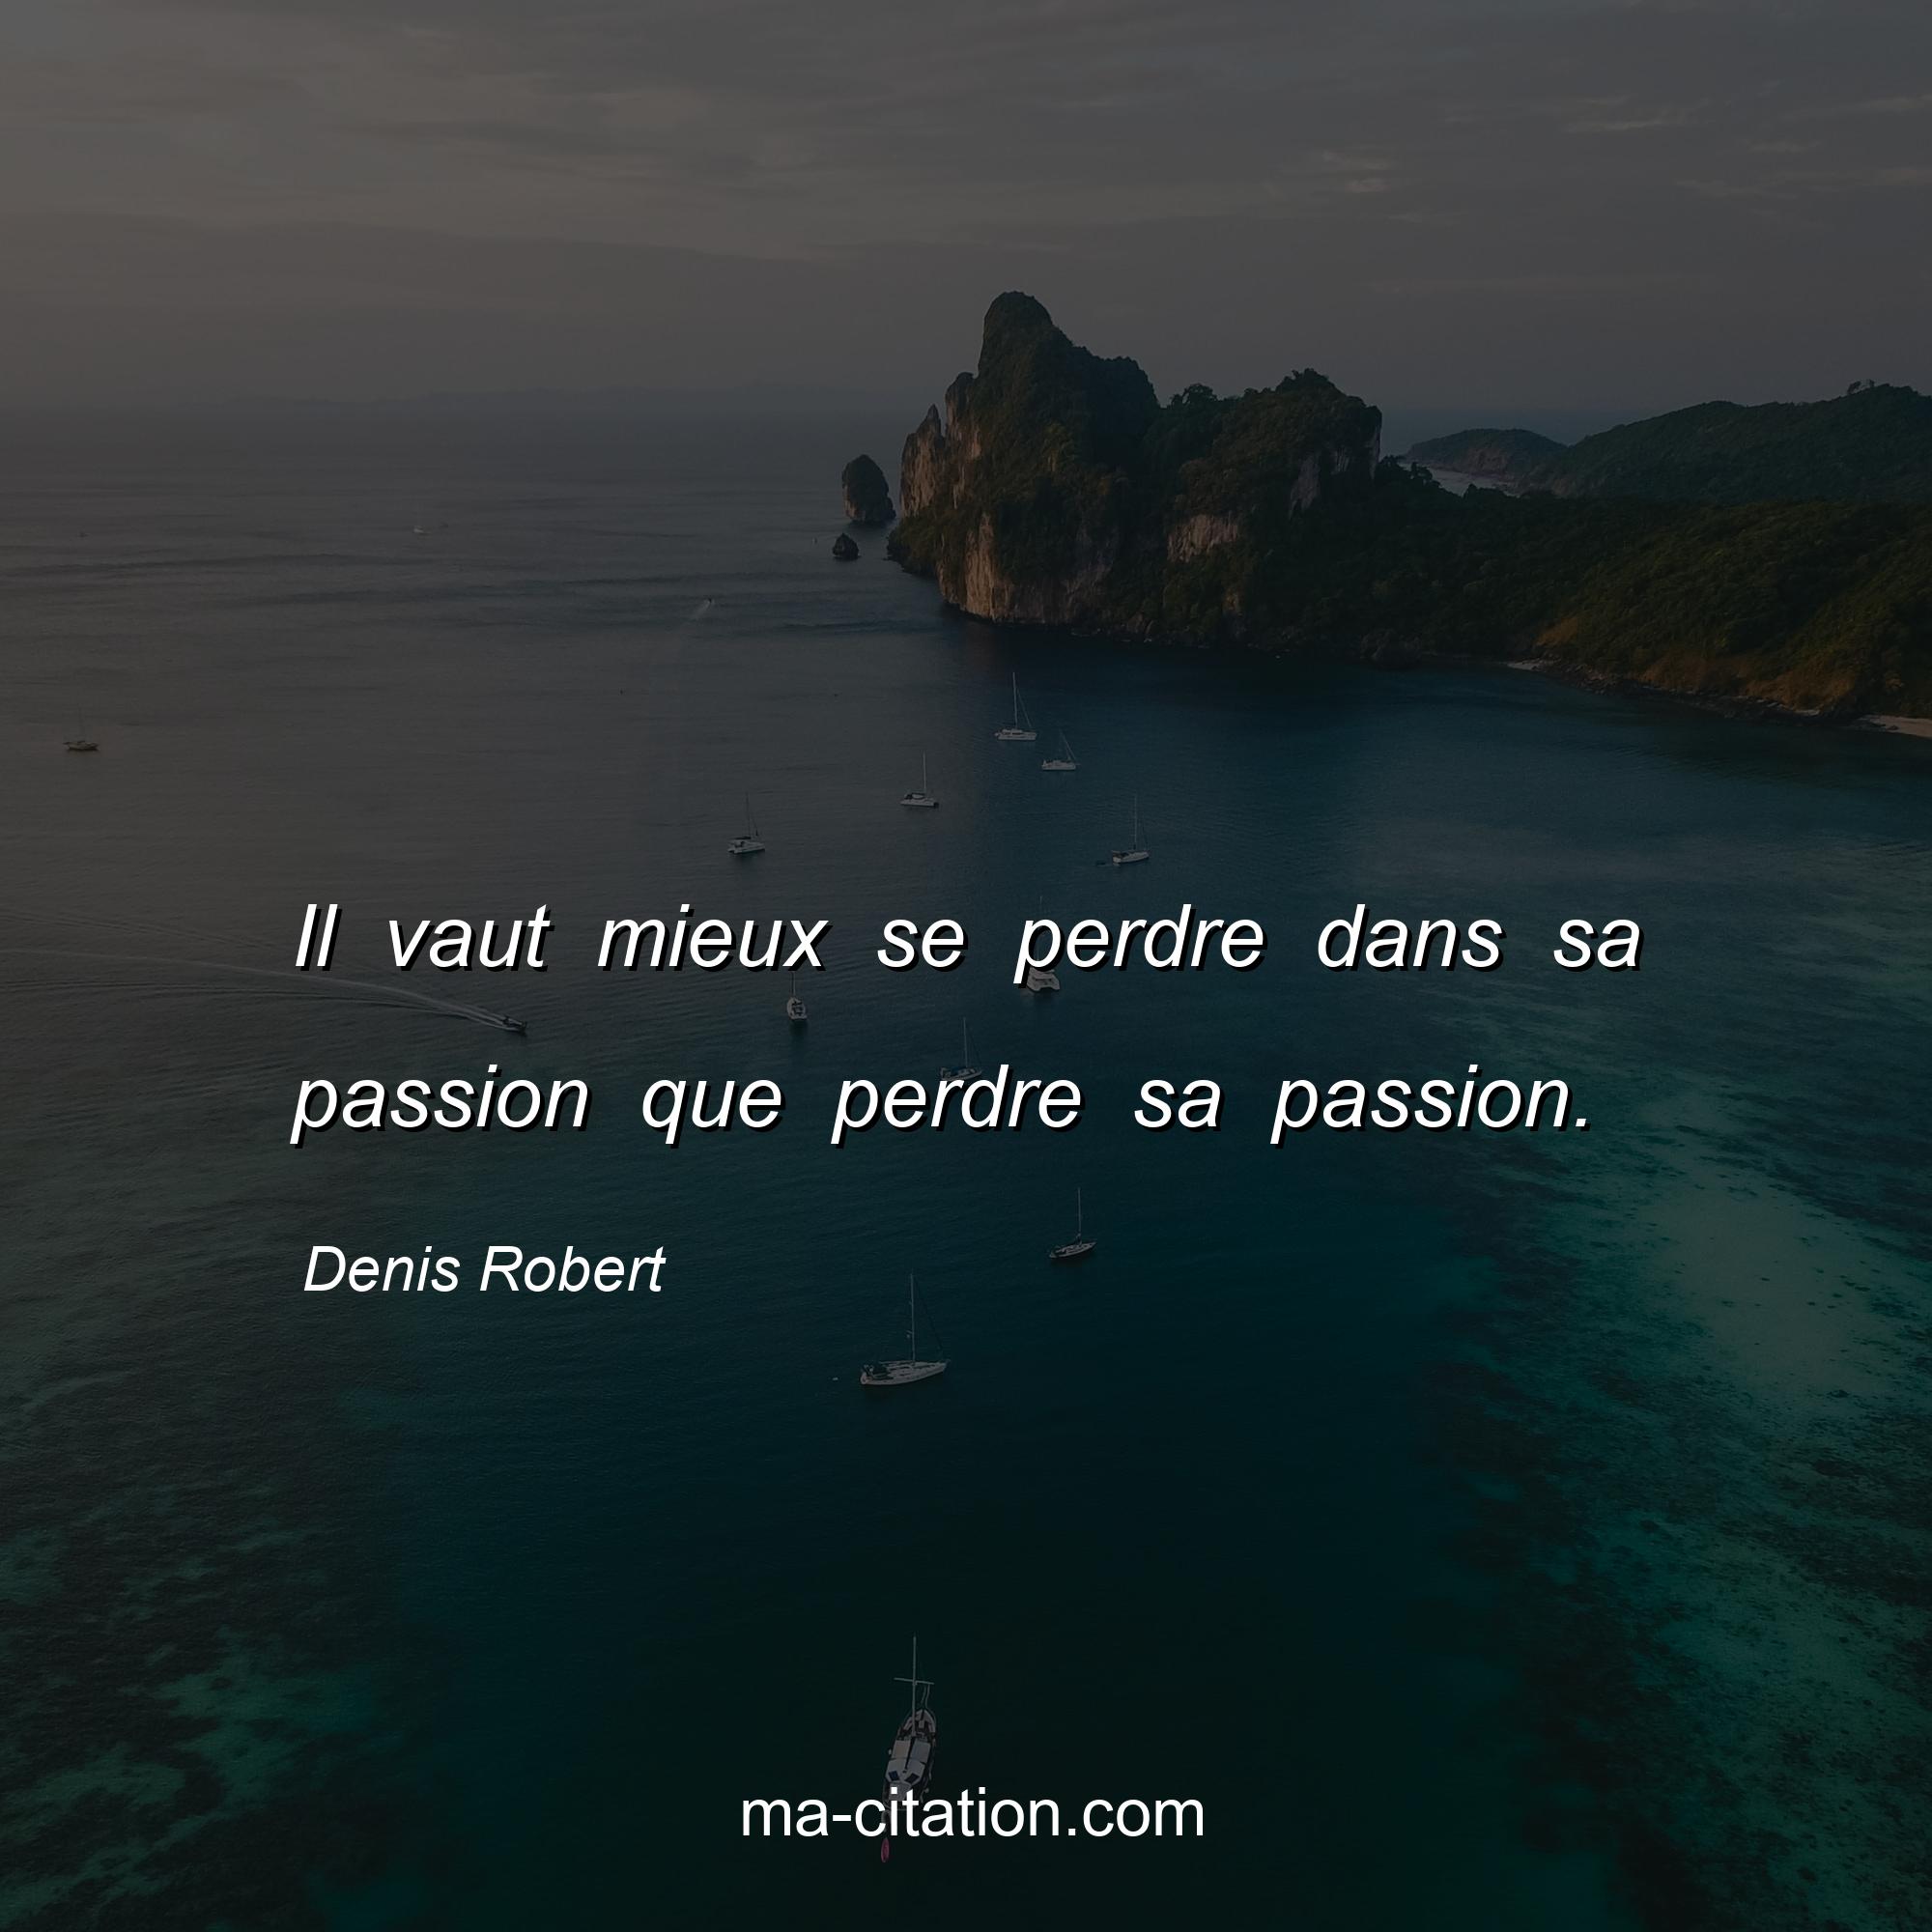 Denis Robert : Il vaut mieux se perdre dans sa passion que perdre sa passion.